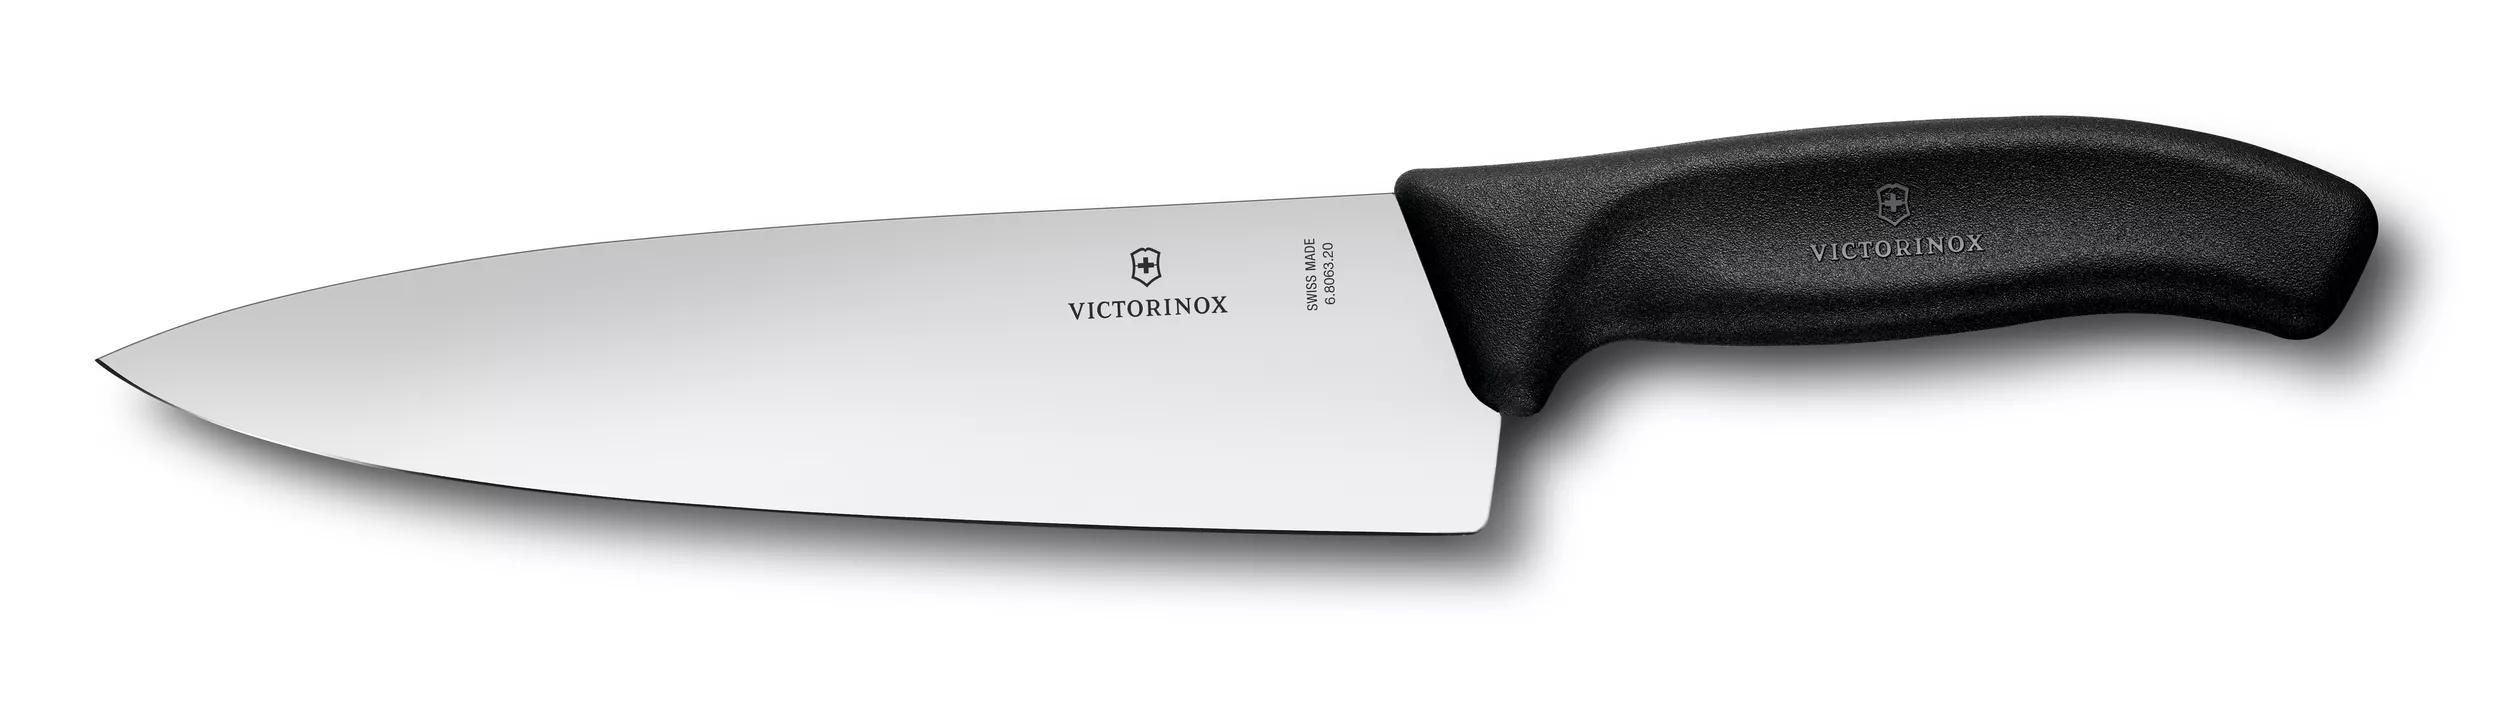 Victorinox Cuchillo de chef Fibrox Pro, 8 pulgadas